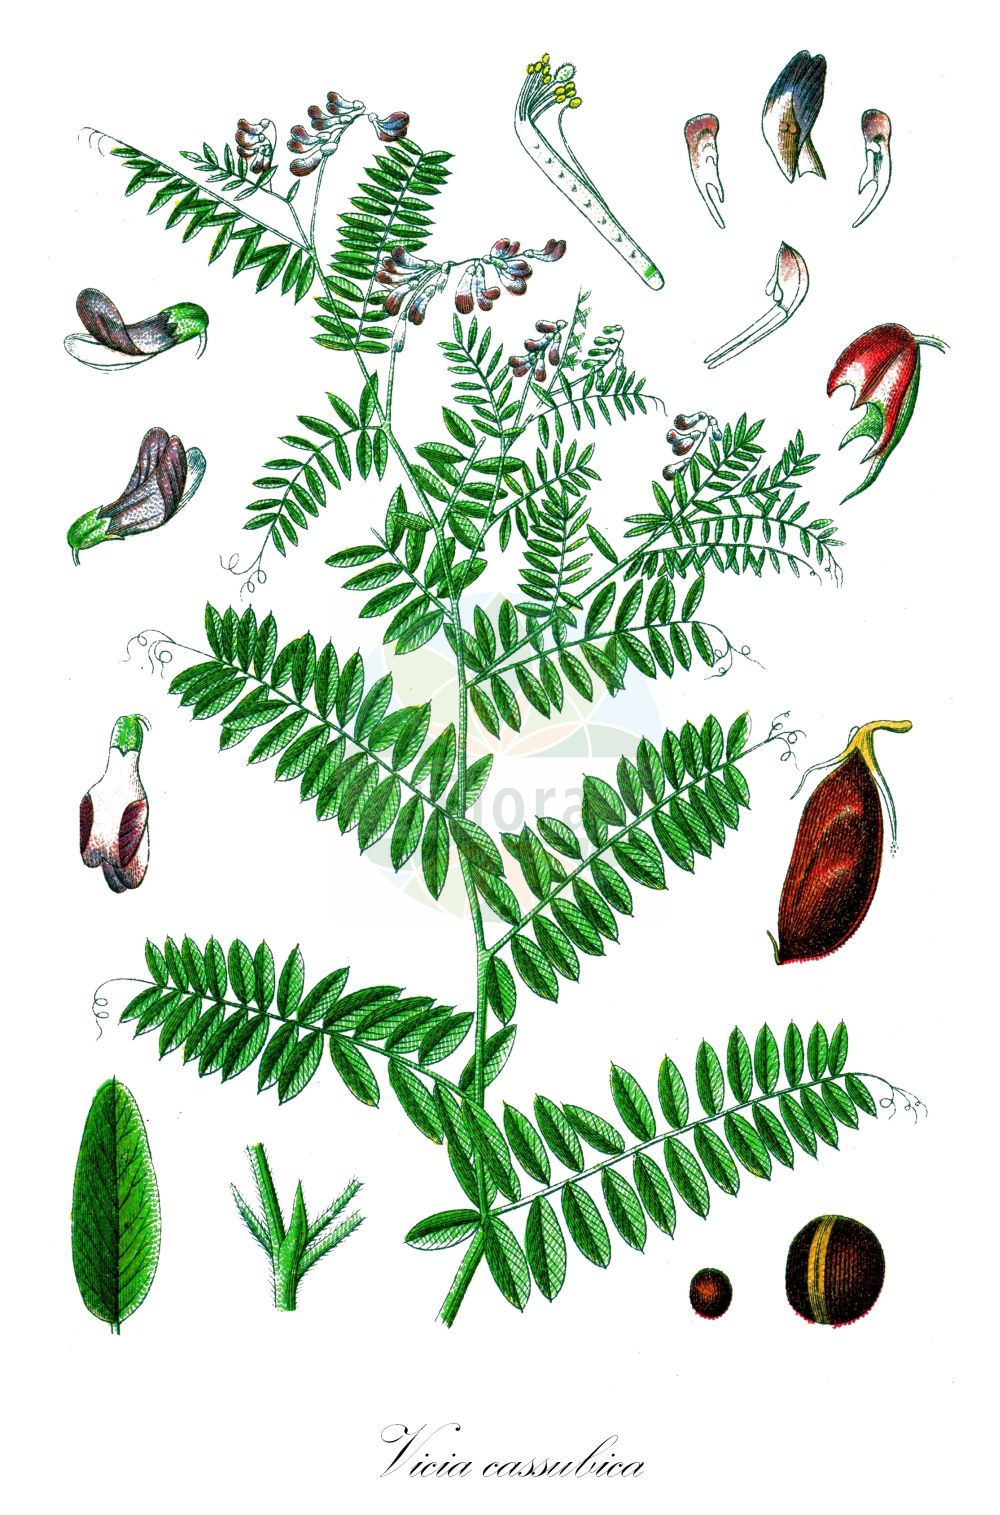 Historische Abbildung von Vicia cassubica (Kassuben-Wicke - Danzig Vetch). Das Bild zeigt Blatt, Bluete, Frucht und Same. ---- Historical Drawing of Vicia cassubica (Kassuben-Wicke - Danzig Vetch). The image is showing leaf, flower, fruit and seed.(Vicia cassubica,Kassuben-Wicke,Danzig Vetch,Ervum cassubicum,Vicia cassubica,Vicia monosperma,Kassuben-Wicke,Kaschuben-Wicke,Danzig Vetch,Kashubian Vetch,Vicia,Wicke,Vetch,Fabaceae,Schmetterlingsblütler,Pea family,Blatt,Bluete,Frucht,Same,leaf,flower,fruit,seed,Sturm (1796f))